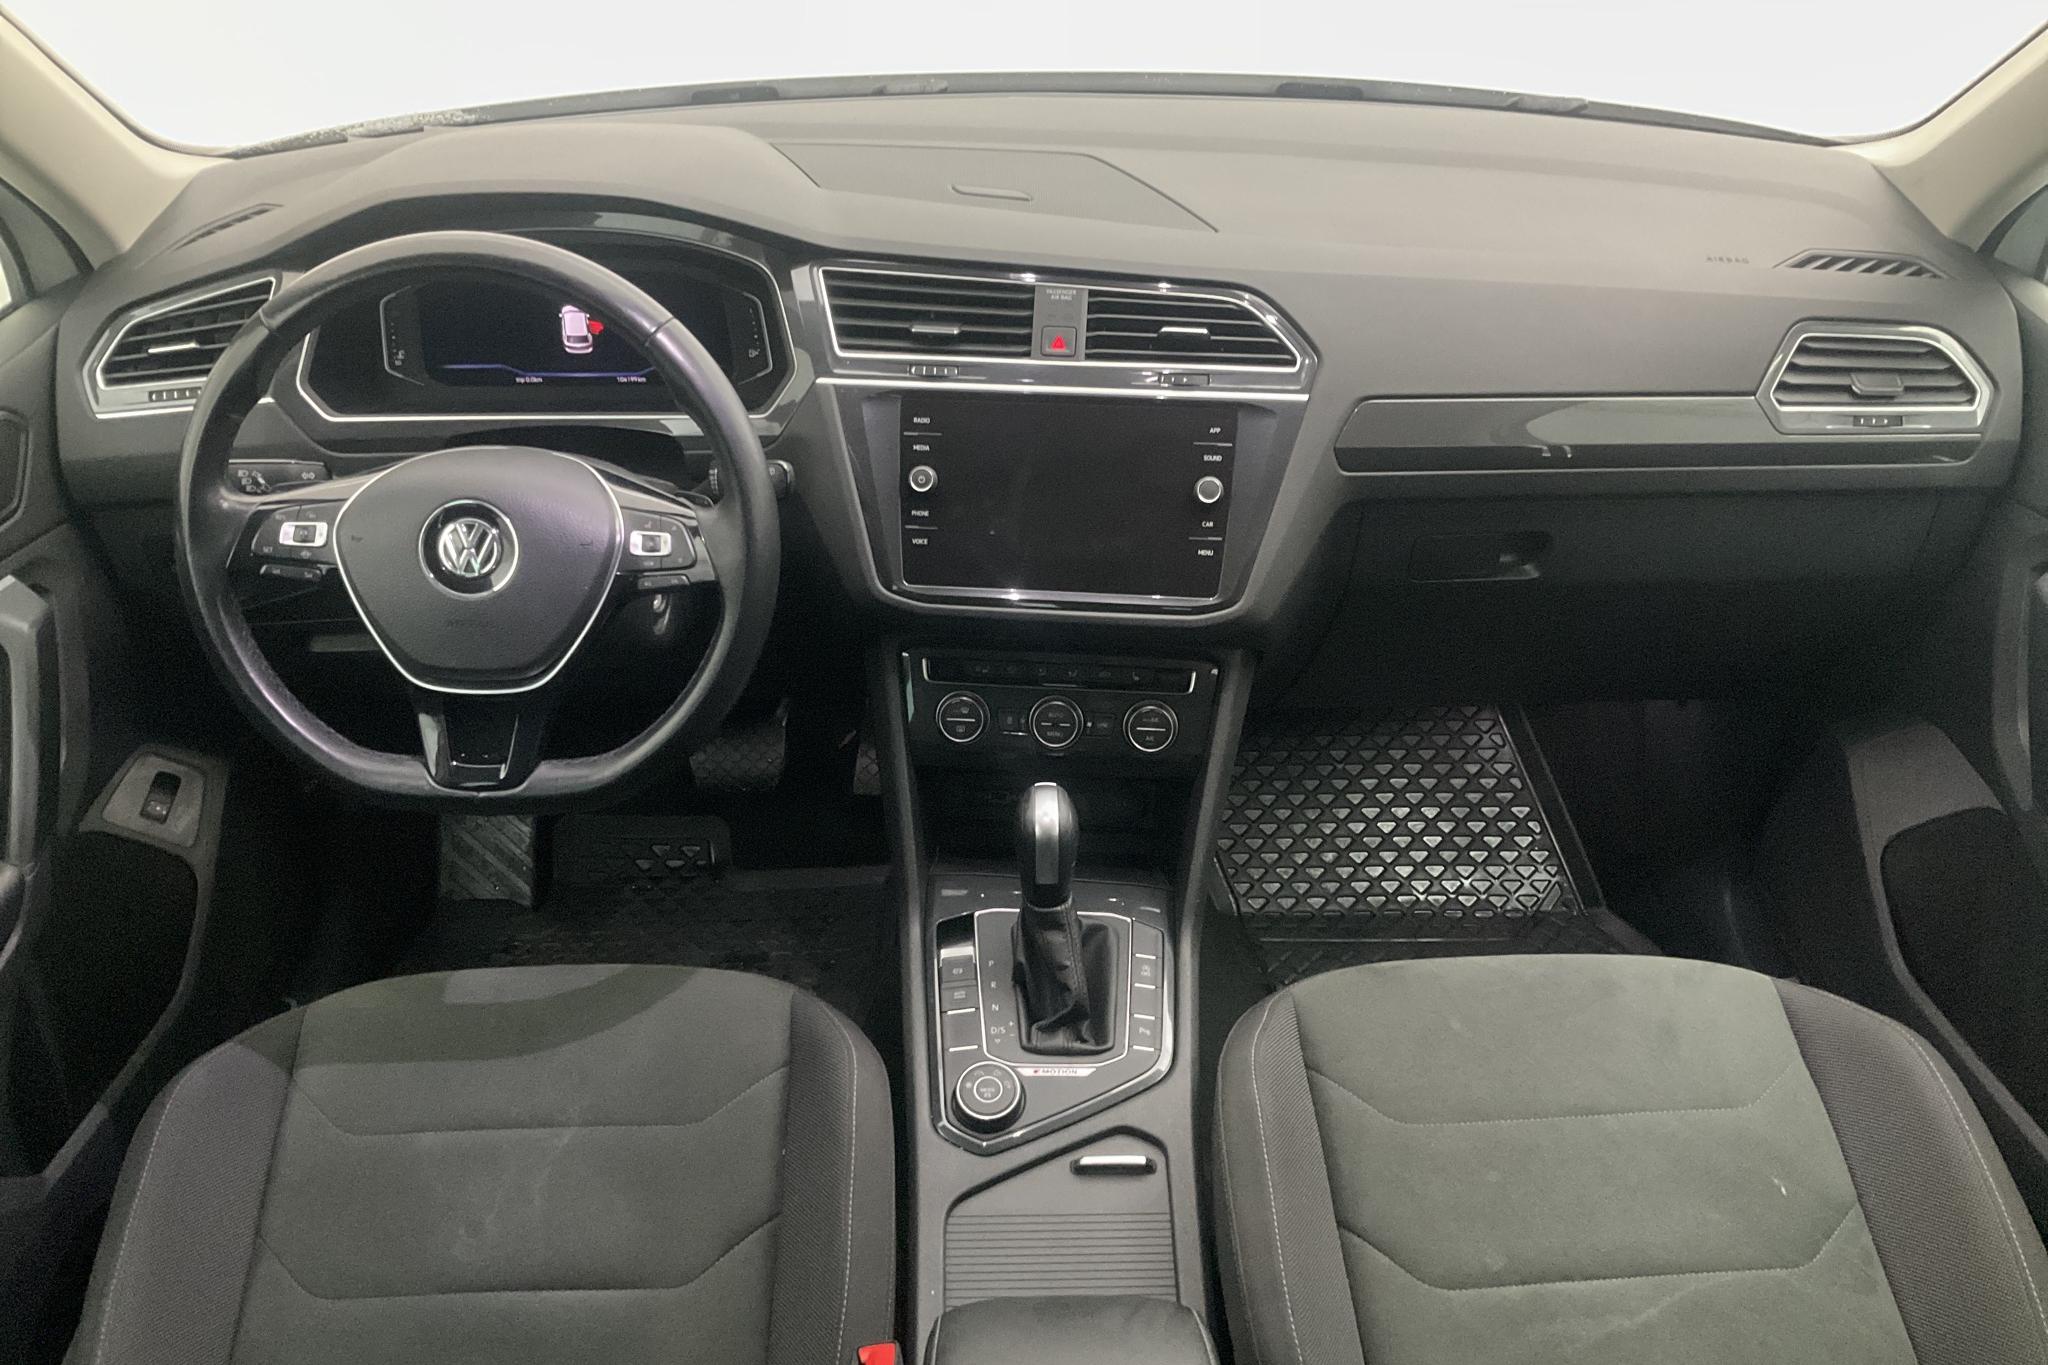 VW Tiguan 2.0 TDI 4MOTION (190hk) - 104 200 km - Automatic - white - 2020